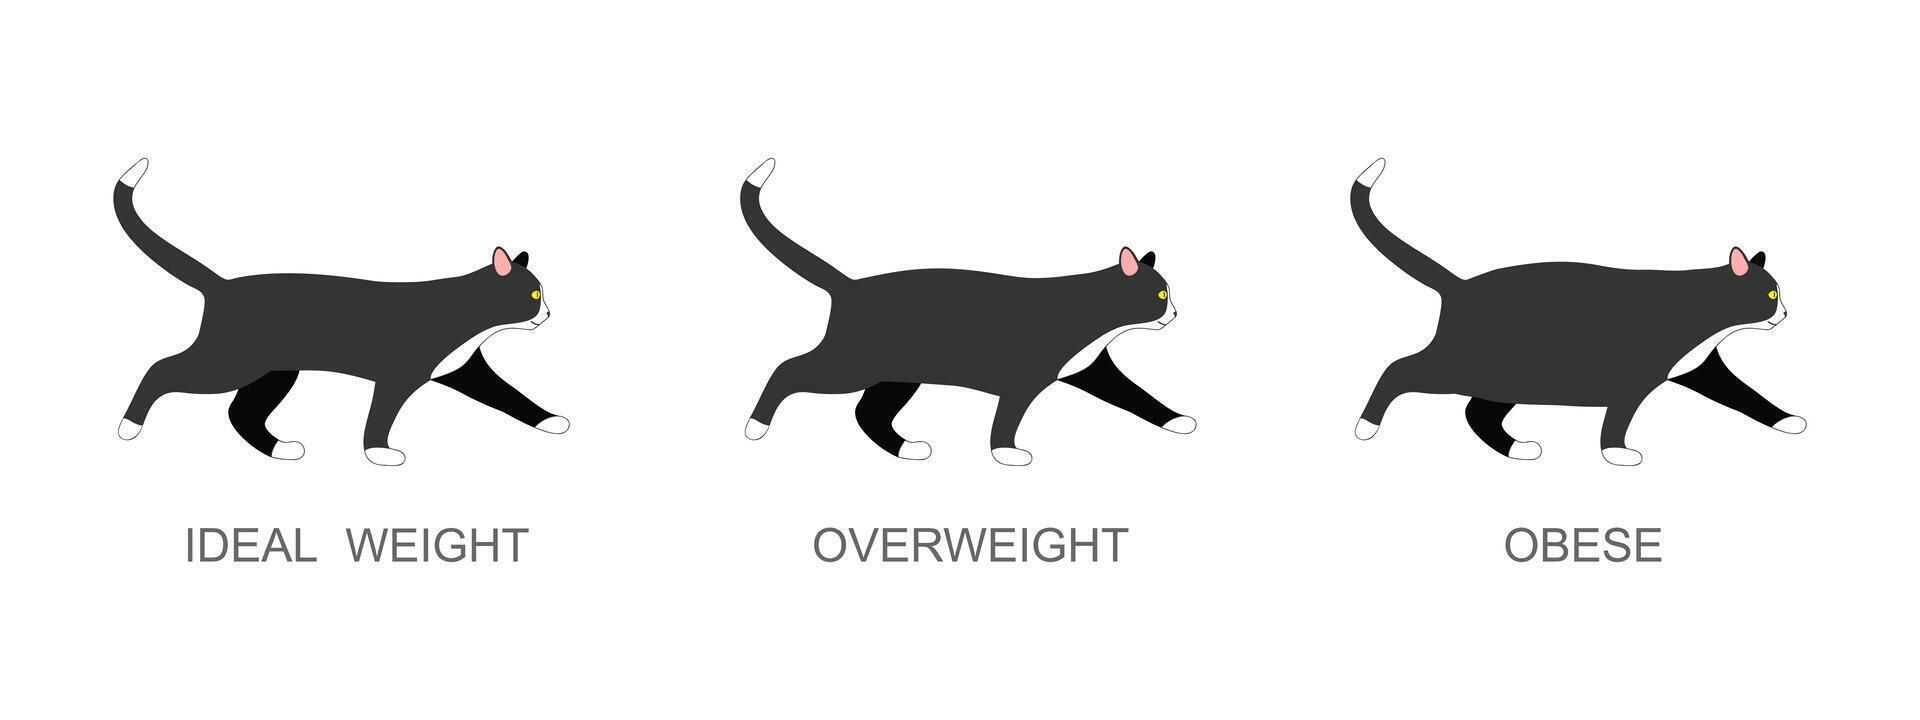 gatto con ideale il peso, sovrappeso e obeso. gattino con normale e Grasso corpo condizione. domestico animali obesità processi Infografica vettore